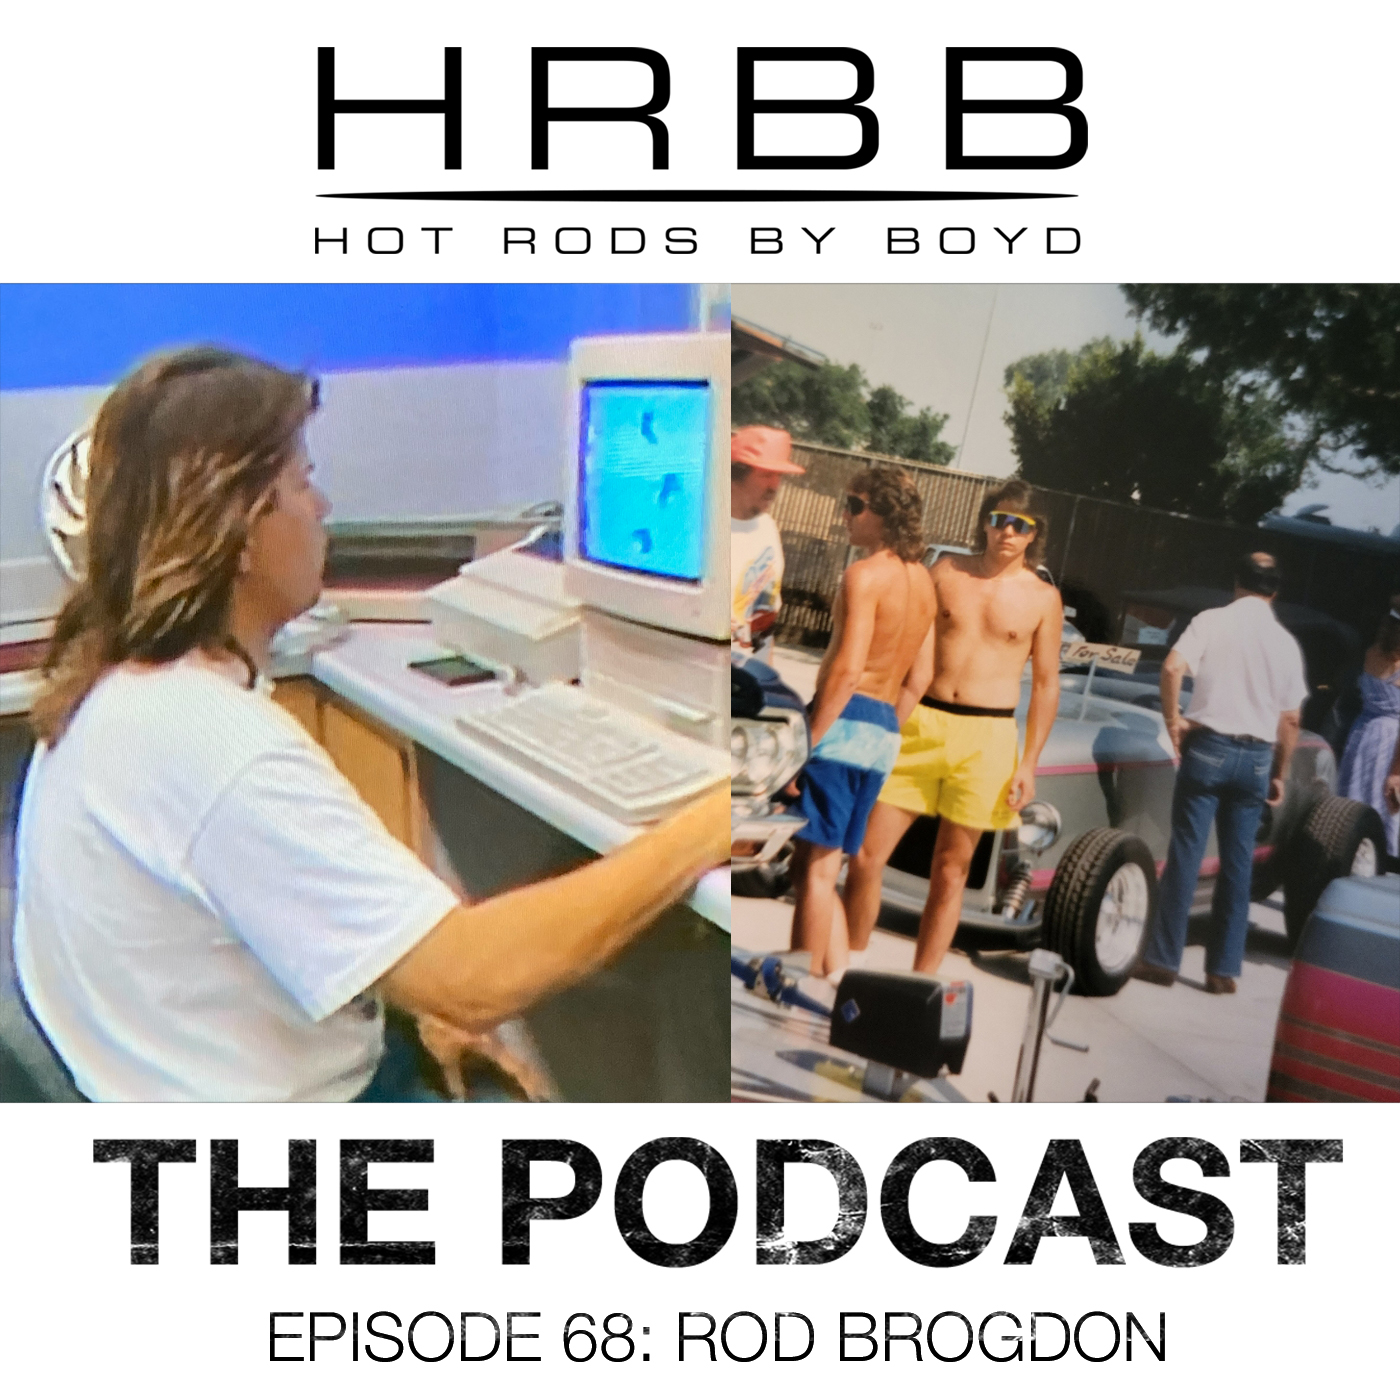 HRBB Episode 68 - Rod Brogdon